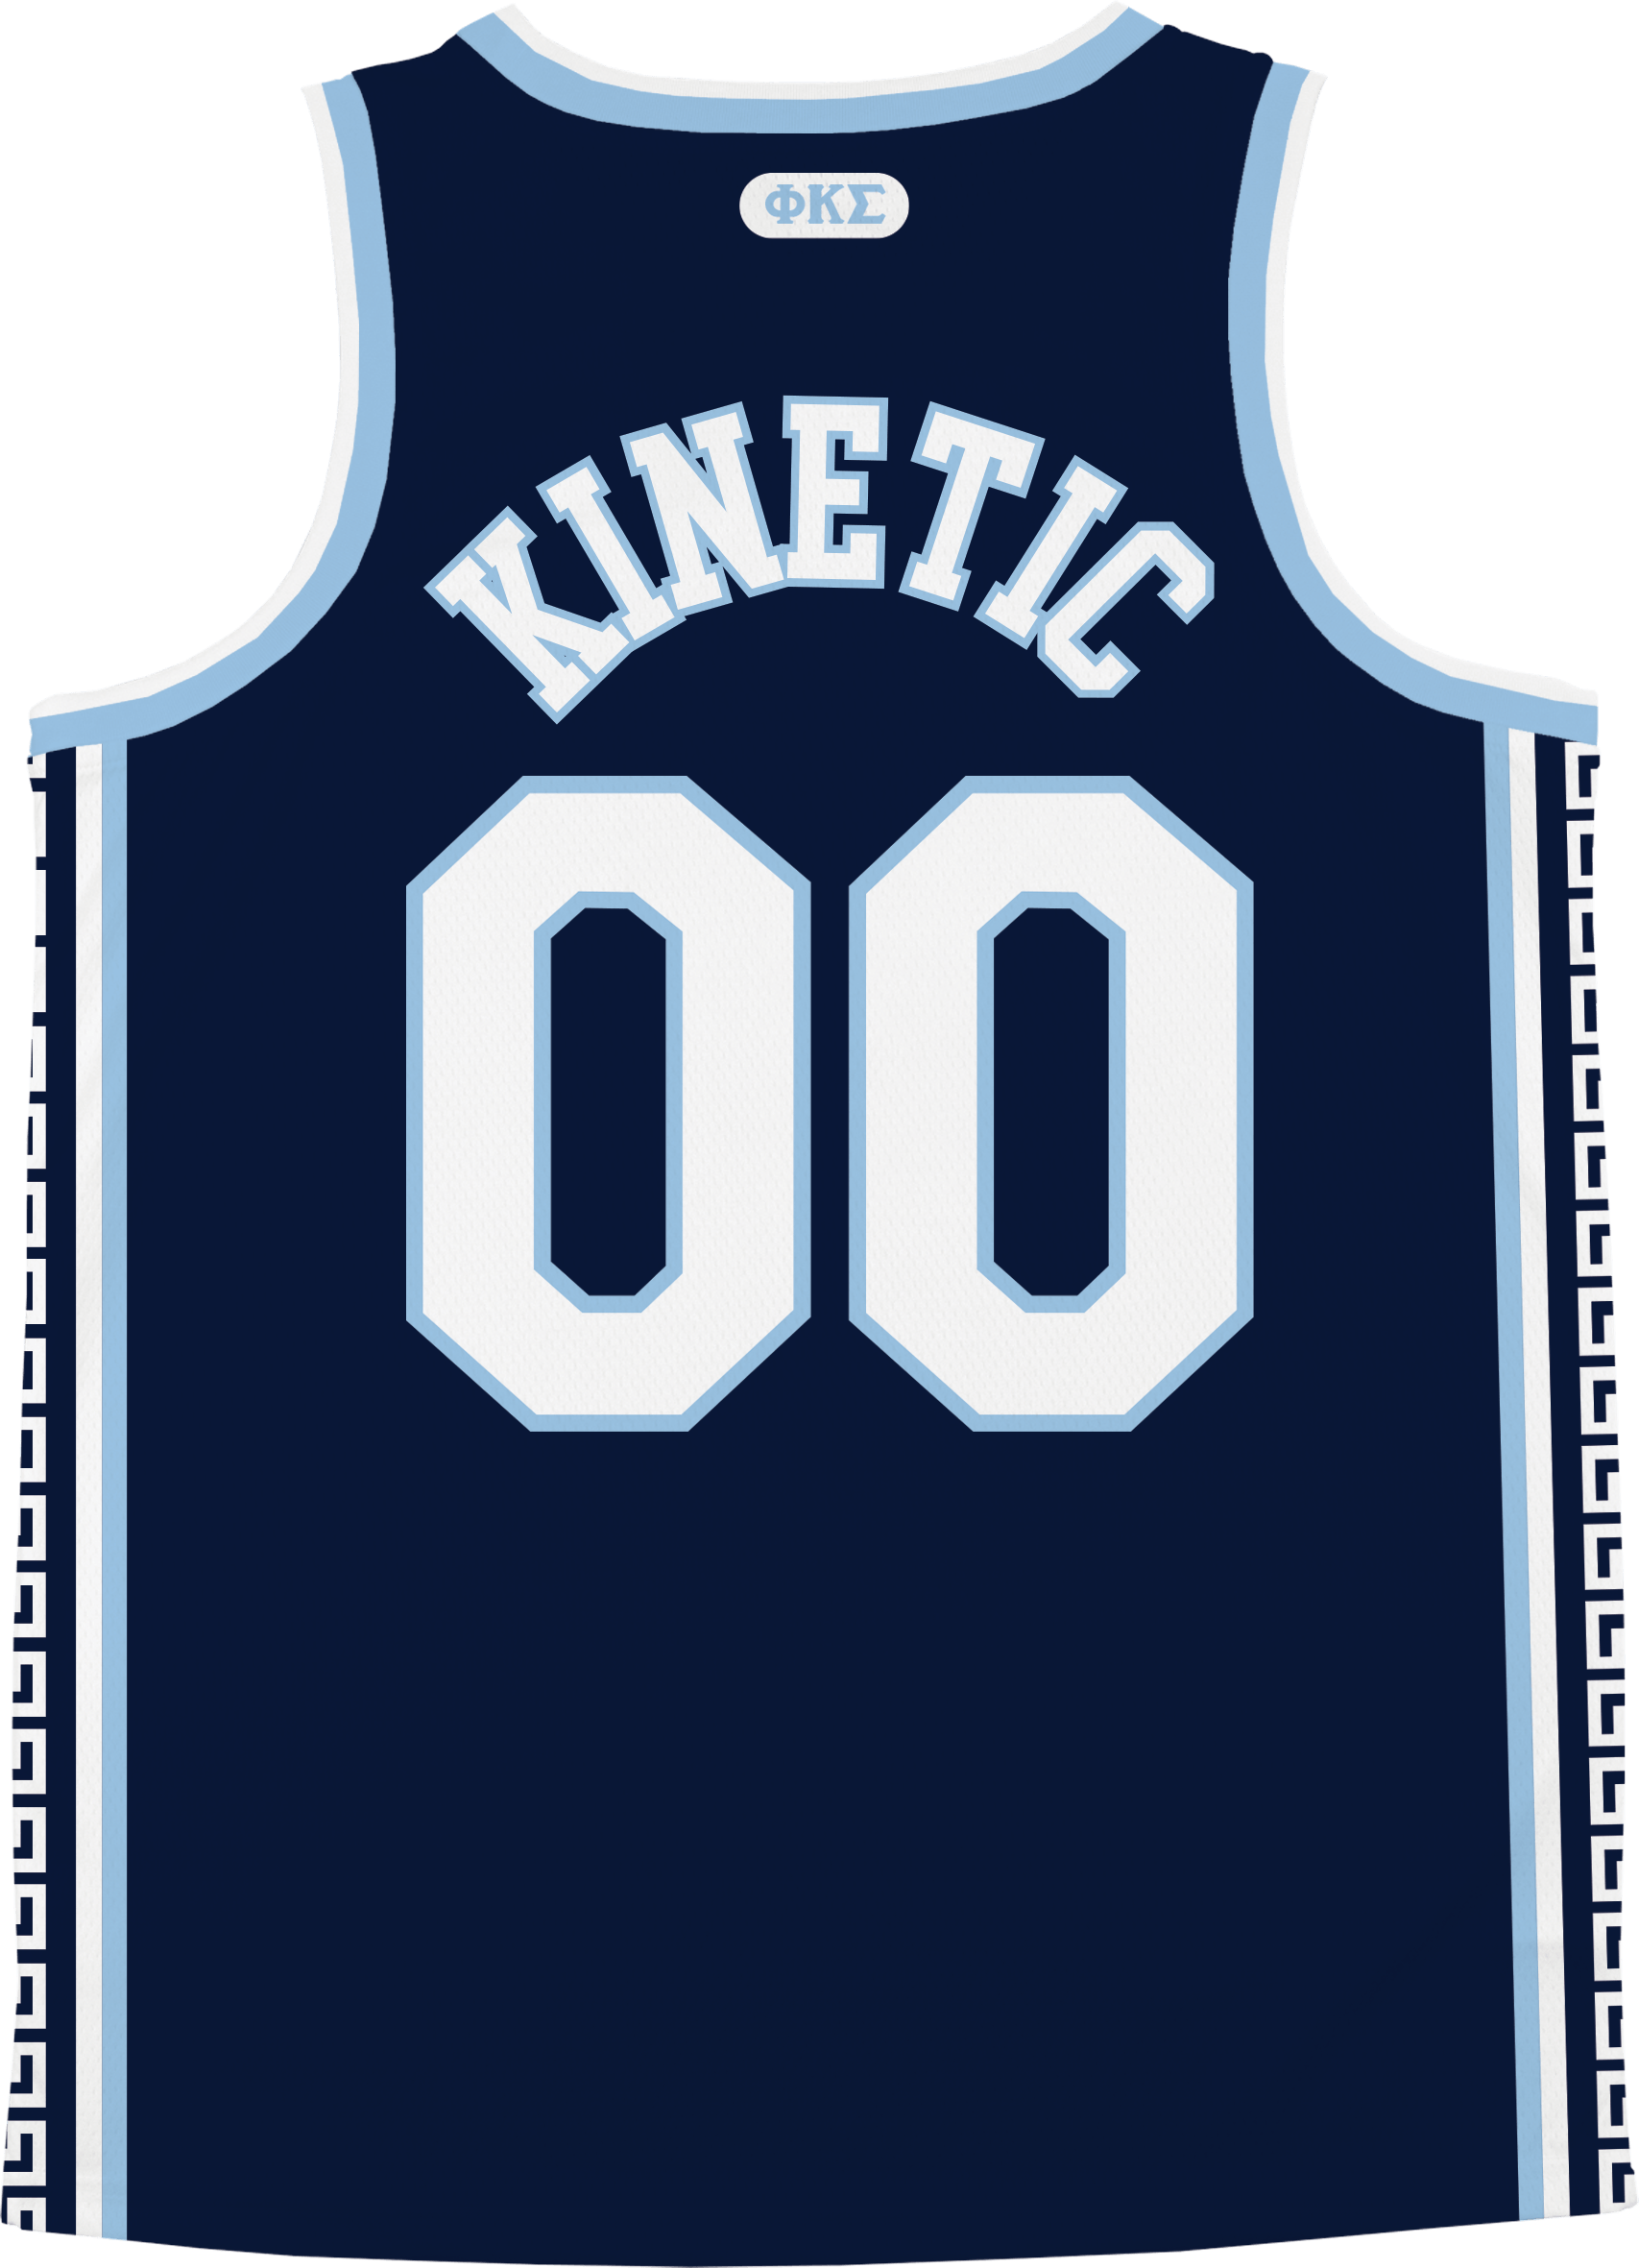 Phi Kappa Sigma - Templar Basketball Jersey - Kinetic Society